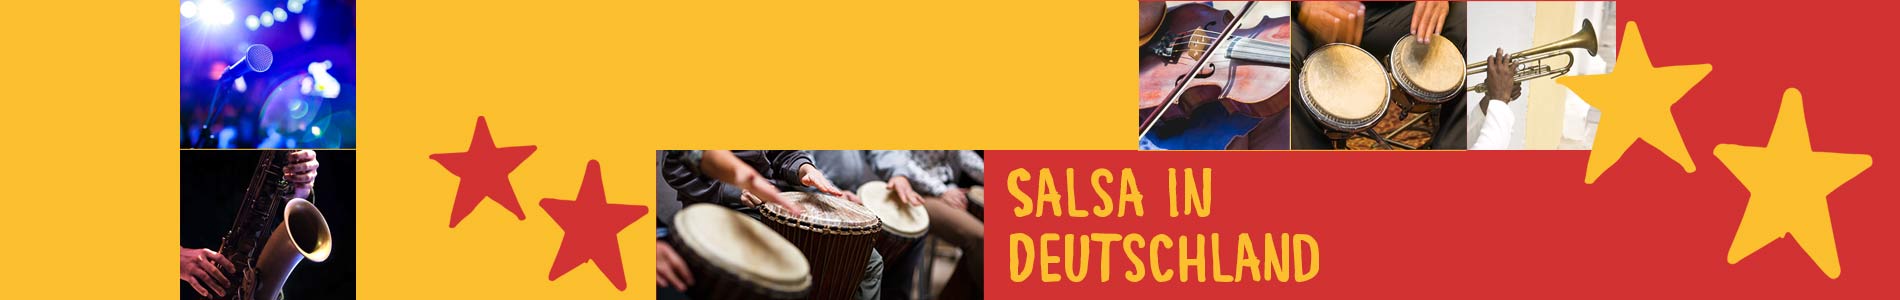 Salsa in Breitenbrunn – Salsa lernen und tanzen, Tanzkurse, Partys, Veranstaltungen